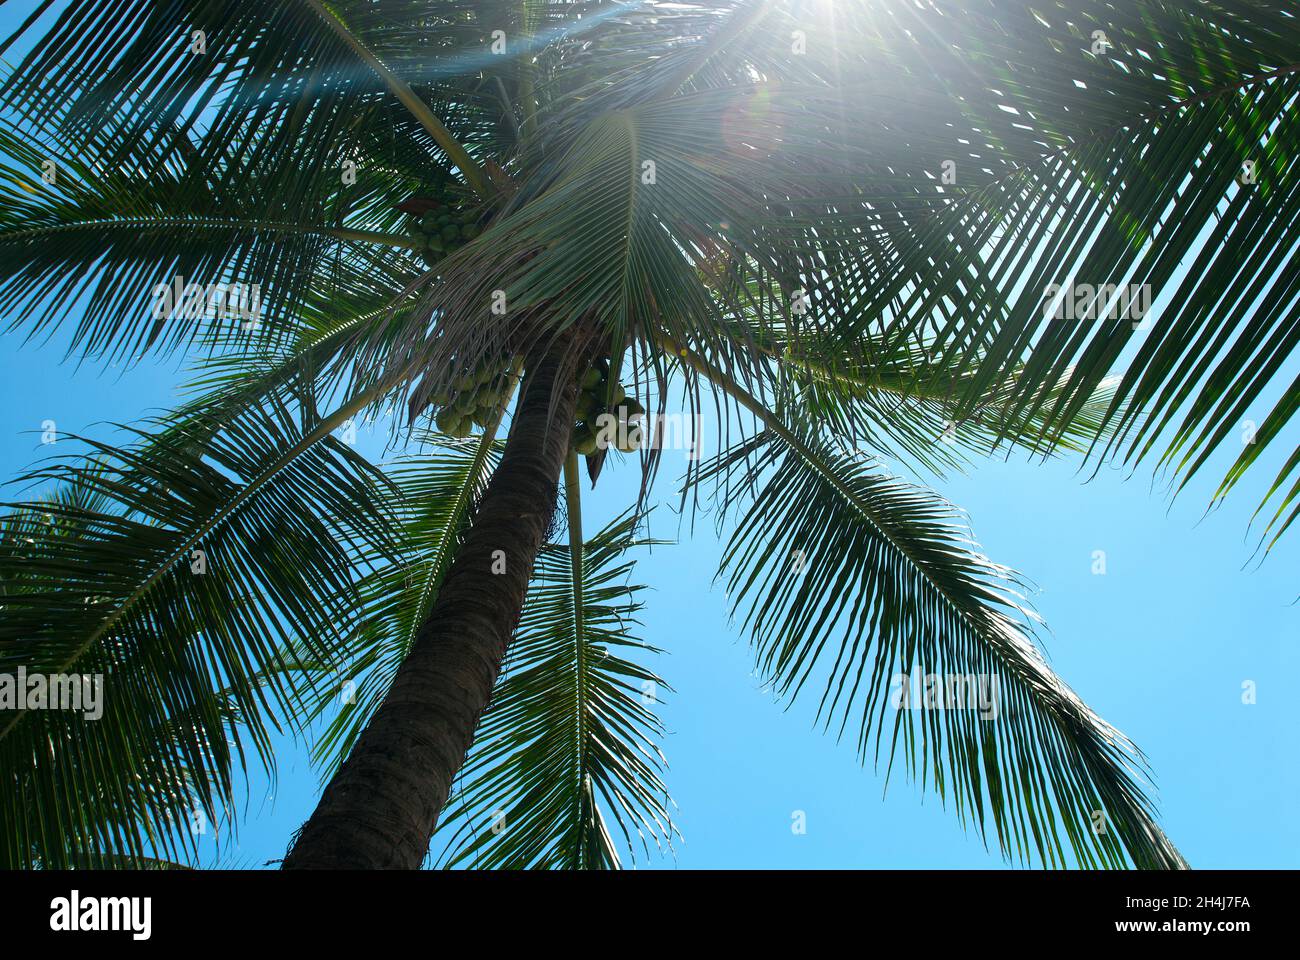 Sun glaring through Palm tree, Praia do Porto da Barra, Salvador, Brazil Stock Photo